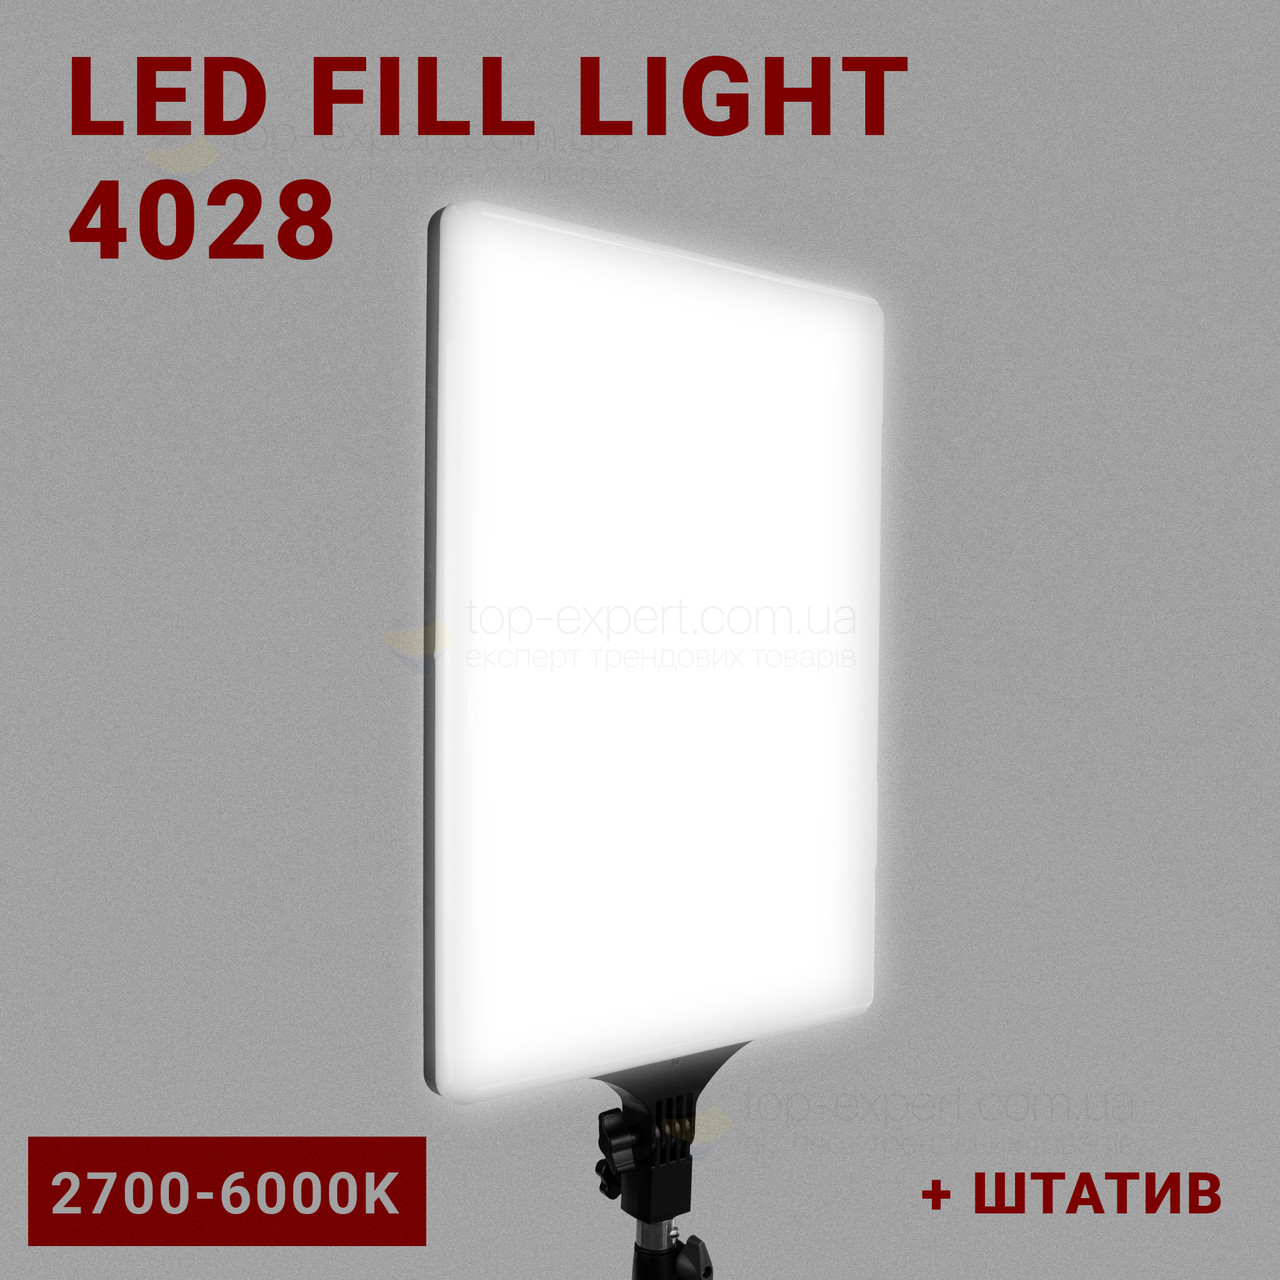 Прямокутна лампа LED 4028 2700-6000K відеосвіт для фото, відео 28х40 см зі штативом 2,1 метр лампа для фону